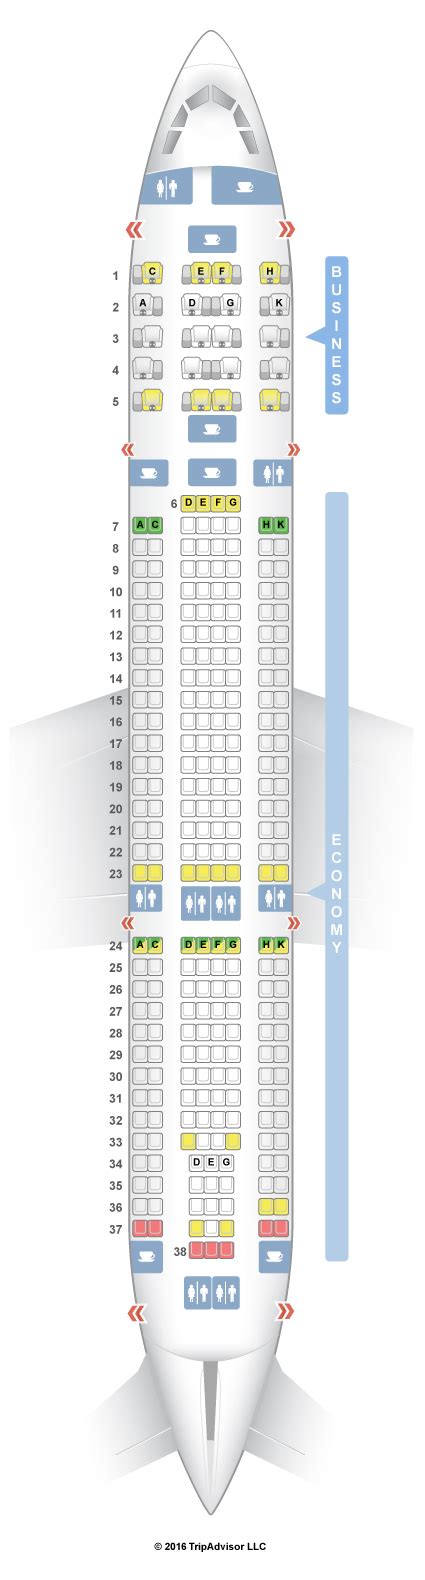 Seatguru Seat Map Tap Portugal Airbus A330 200 332 V3